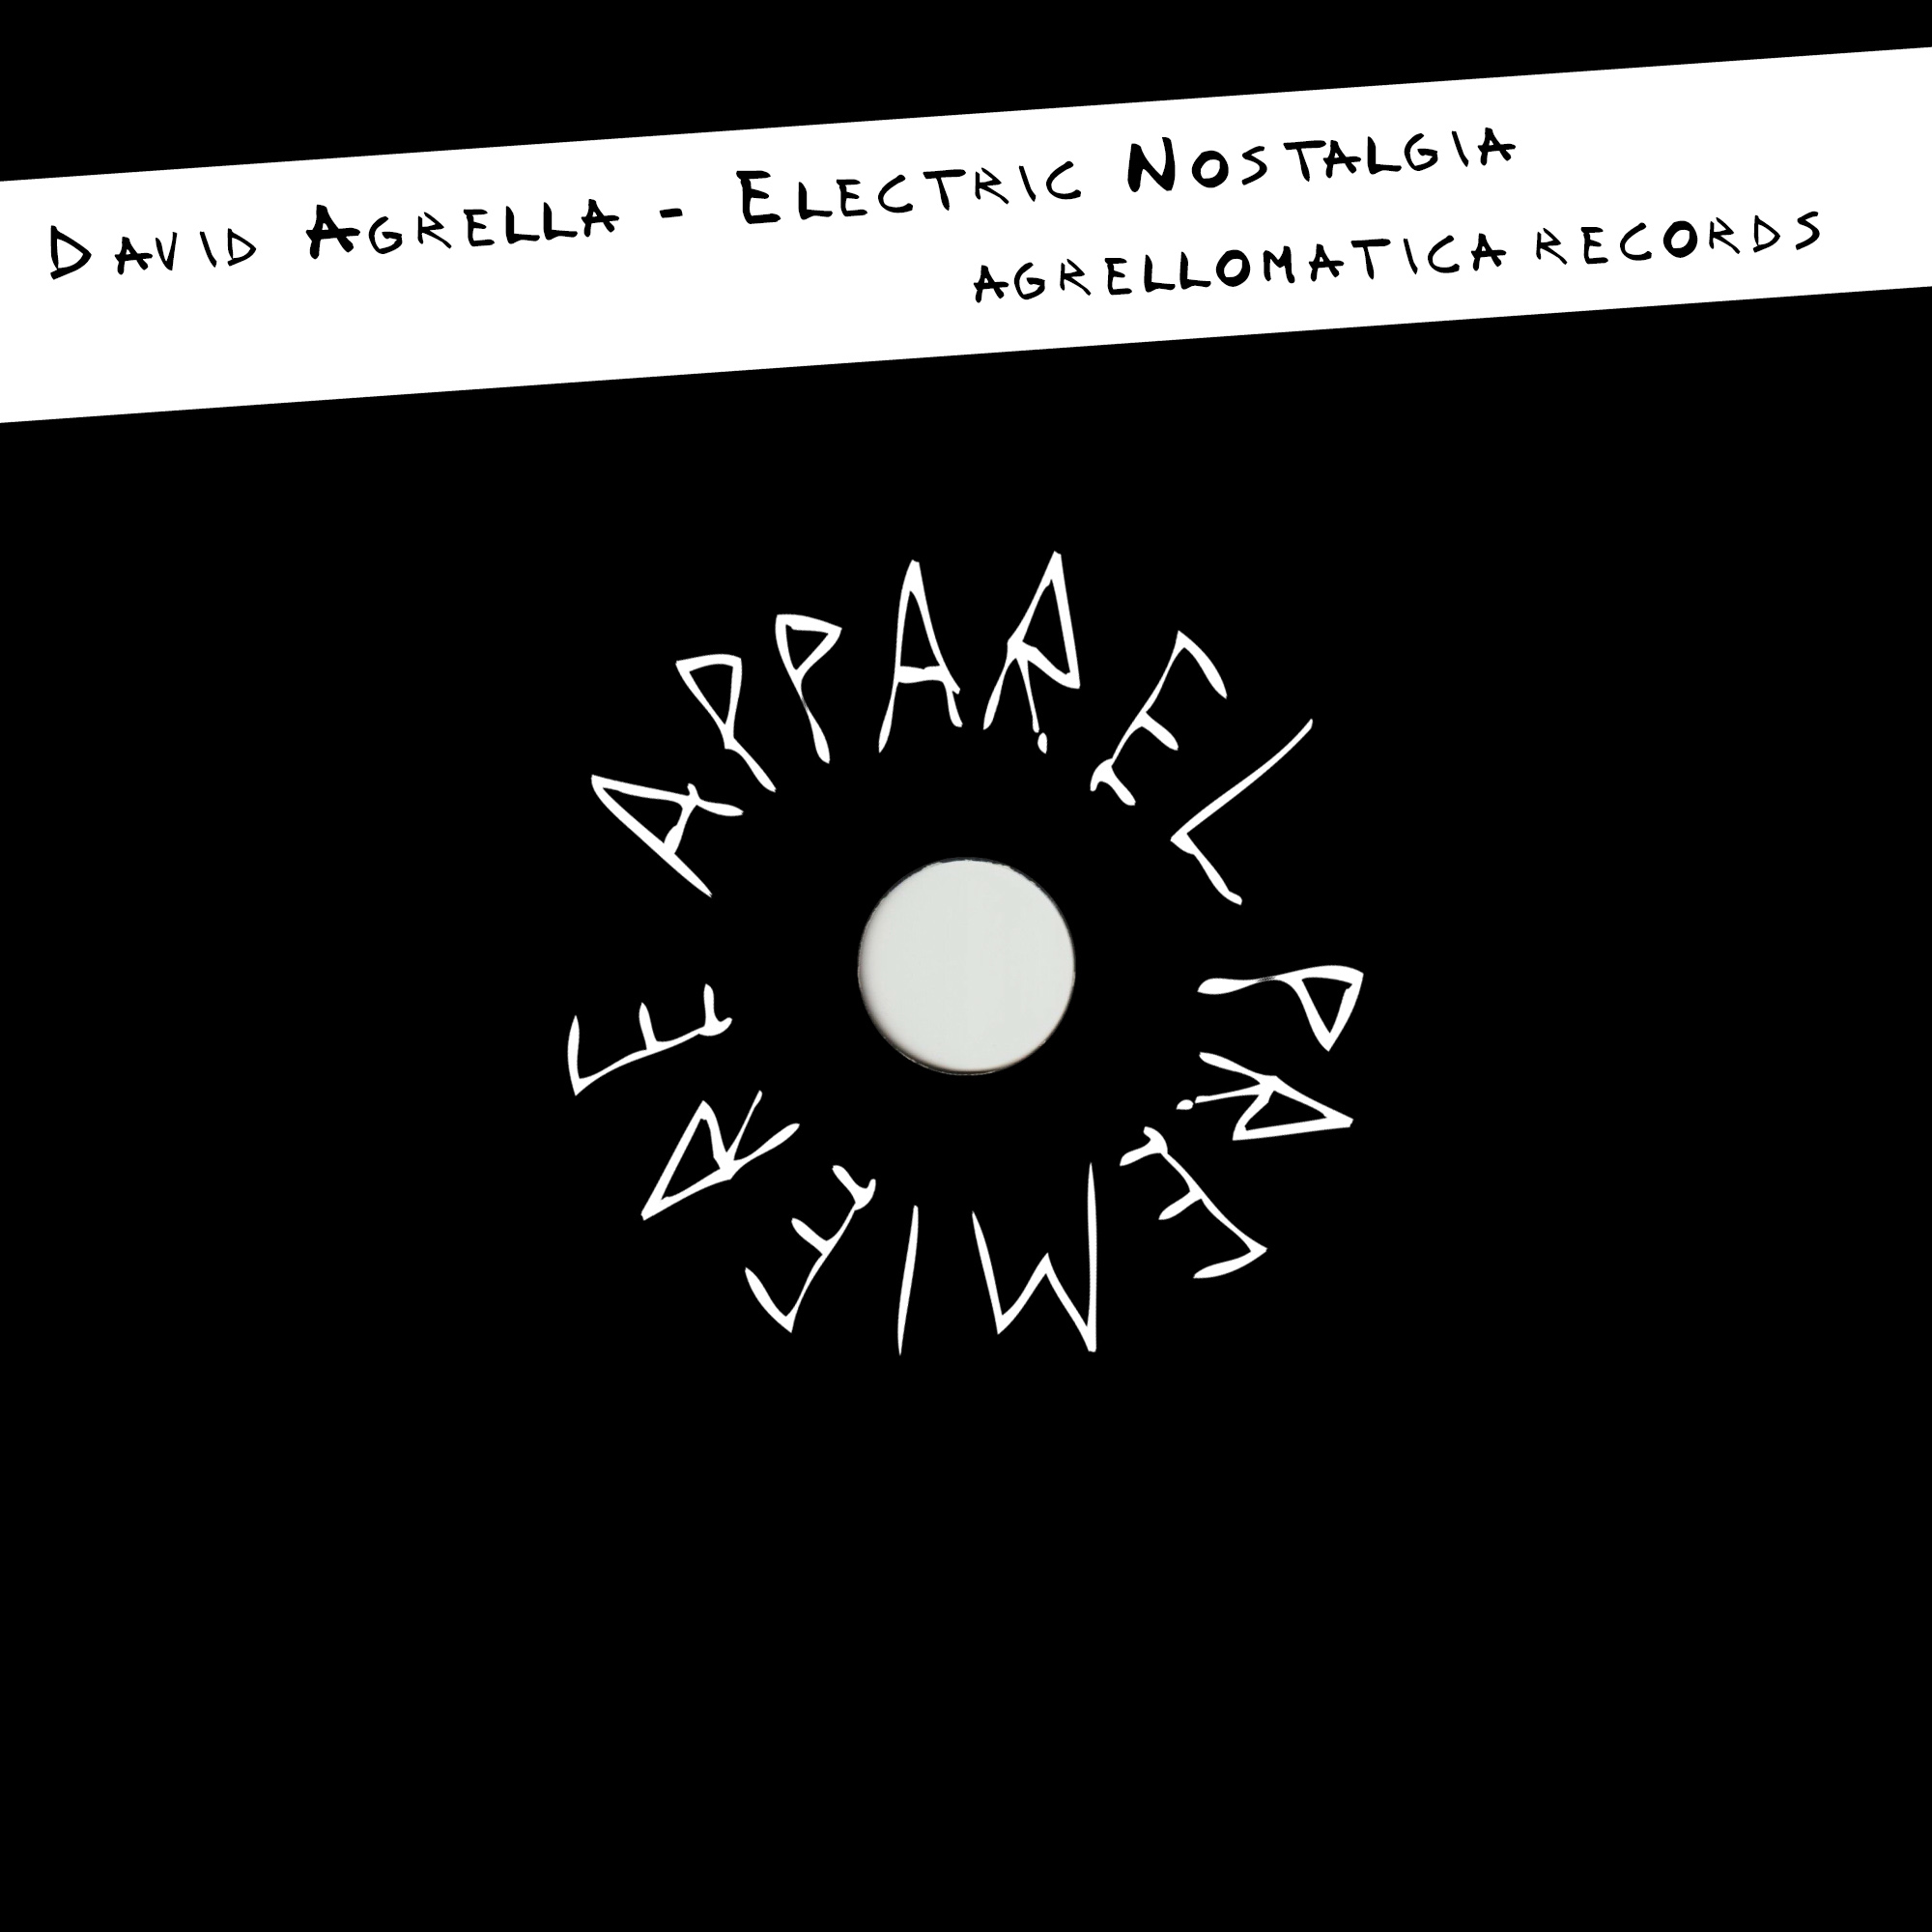 APPAREL PREMIERE David Agrella – Electric Nostalgia [Agrellomatica Records]